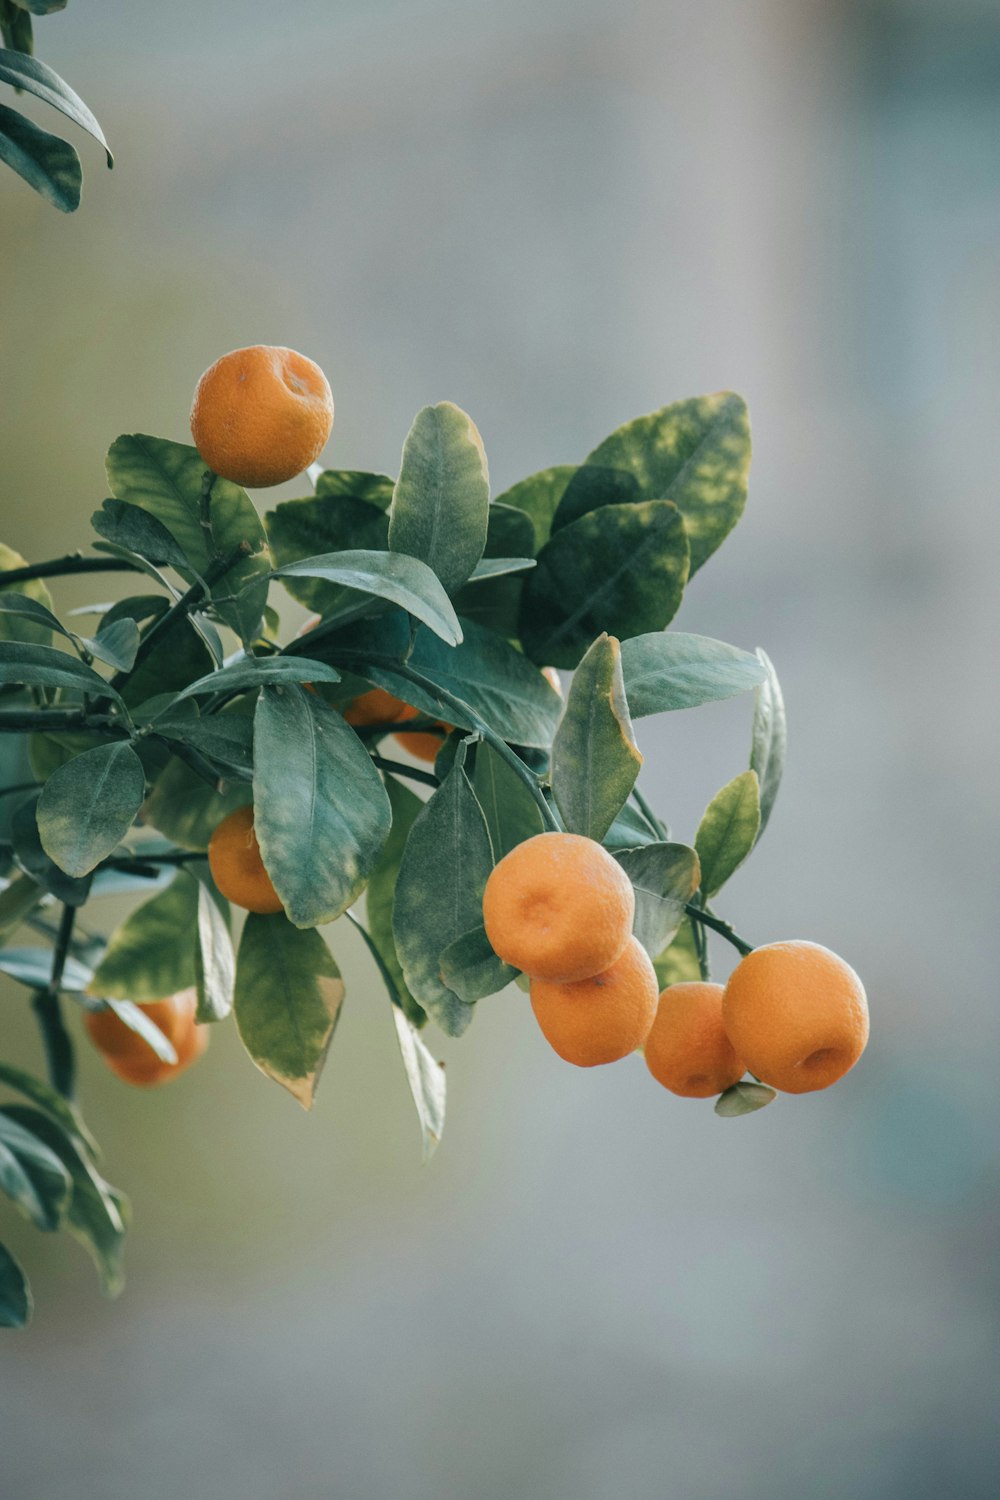 Tagsüber Orangenfrüchte am Baum